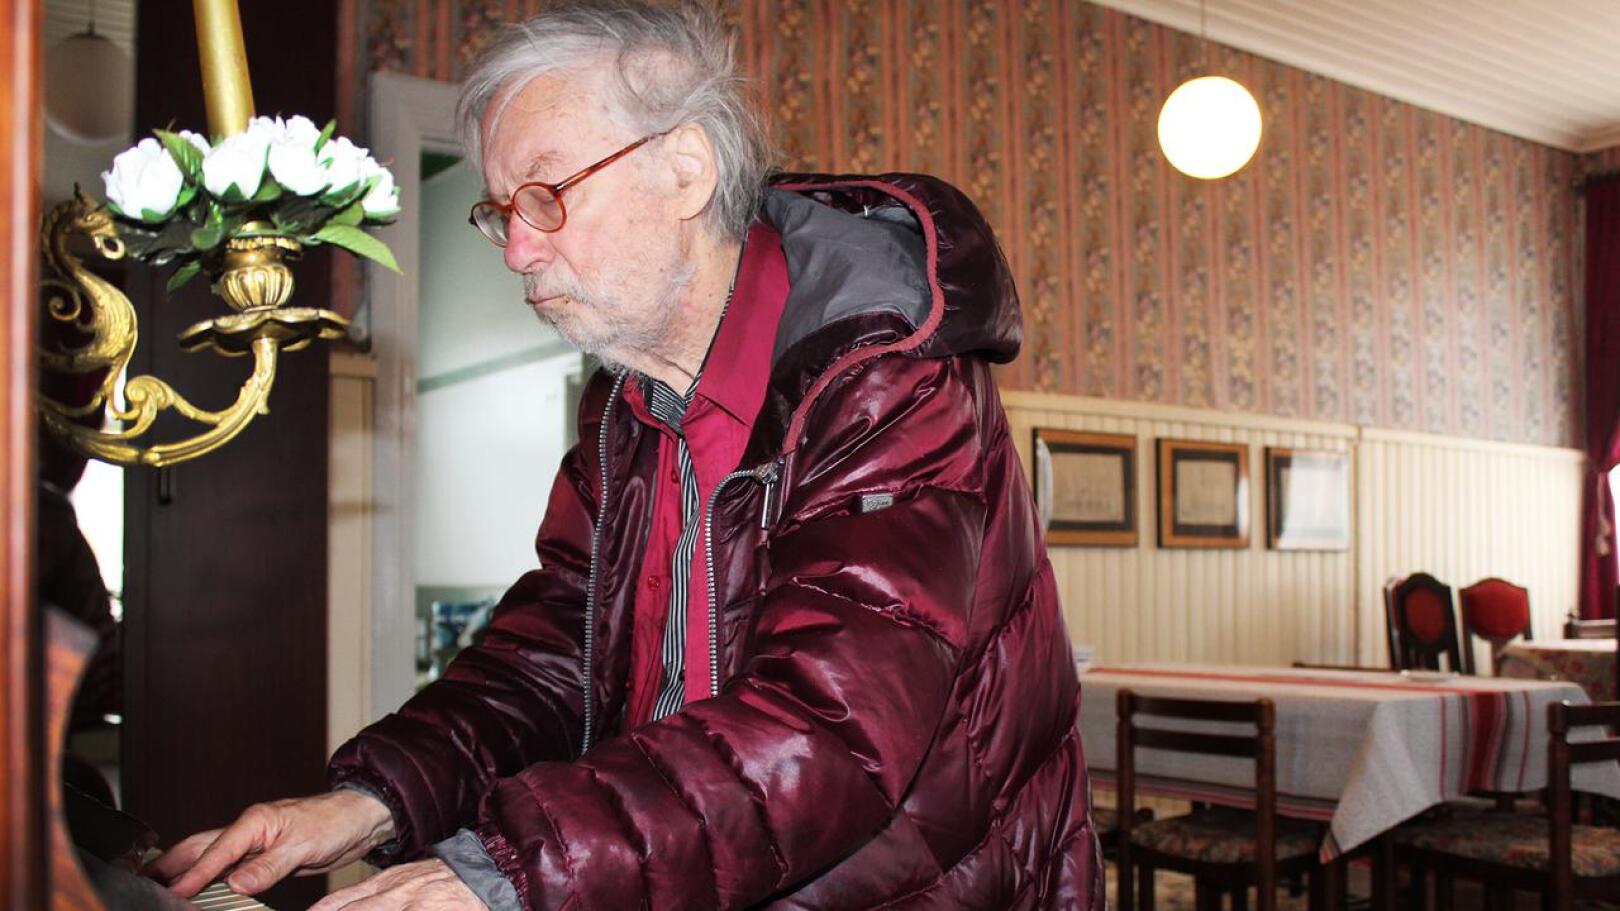 Jyrki Pelliselle myönnettiin valtion 15-vuotinen taiteilija-apuraha vuonna 1984 ja valtion taiteilijaeläke vuonna 2002. Tällä hetkellä 80-vuotias kirjailija, runoilija, kuvataiteilija on eläkkeellä, mutta tekee töitä päivittäin. Kalajoella Säästöpankin talossa valmistui romaani, ja vanha G&E Kanhäuser-piano houkutteli soittamaan useasti päivässä.